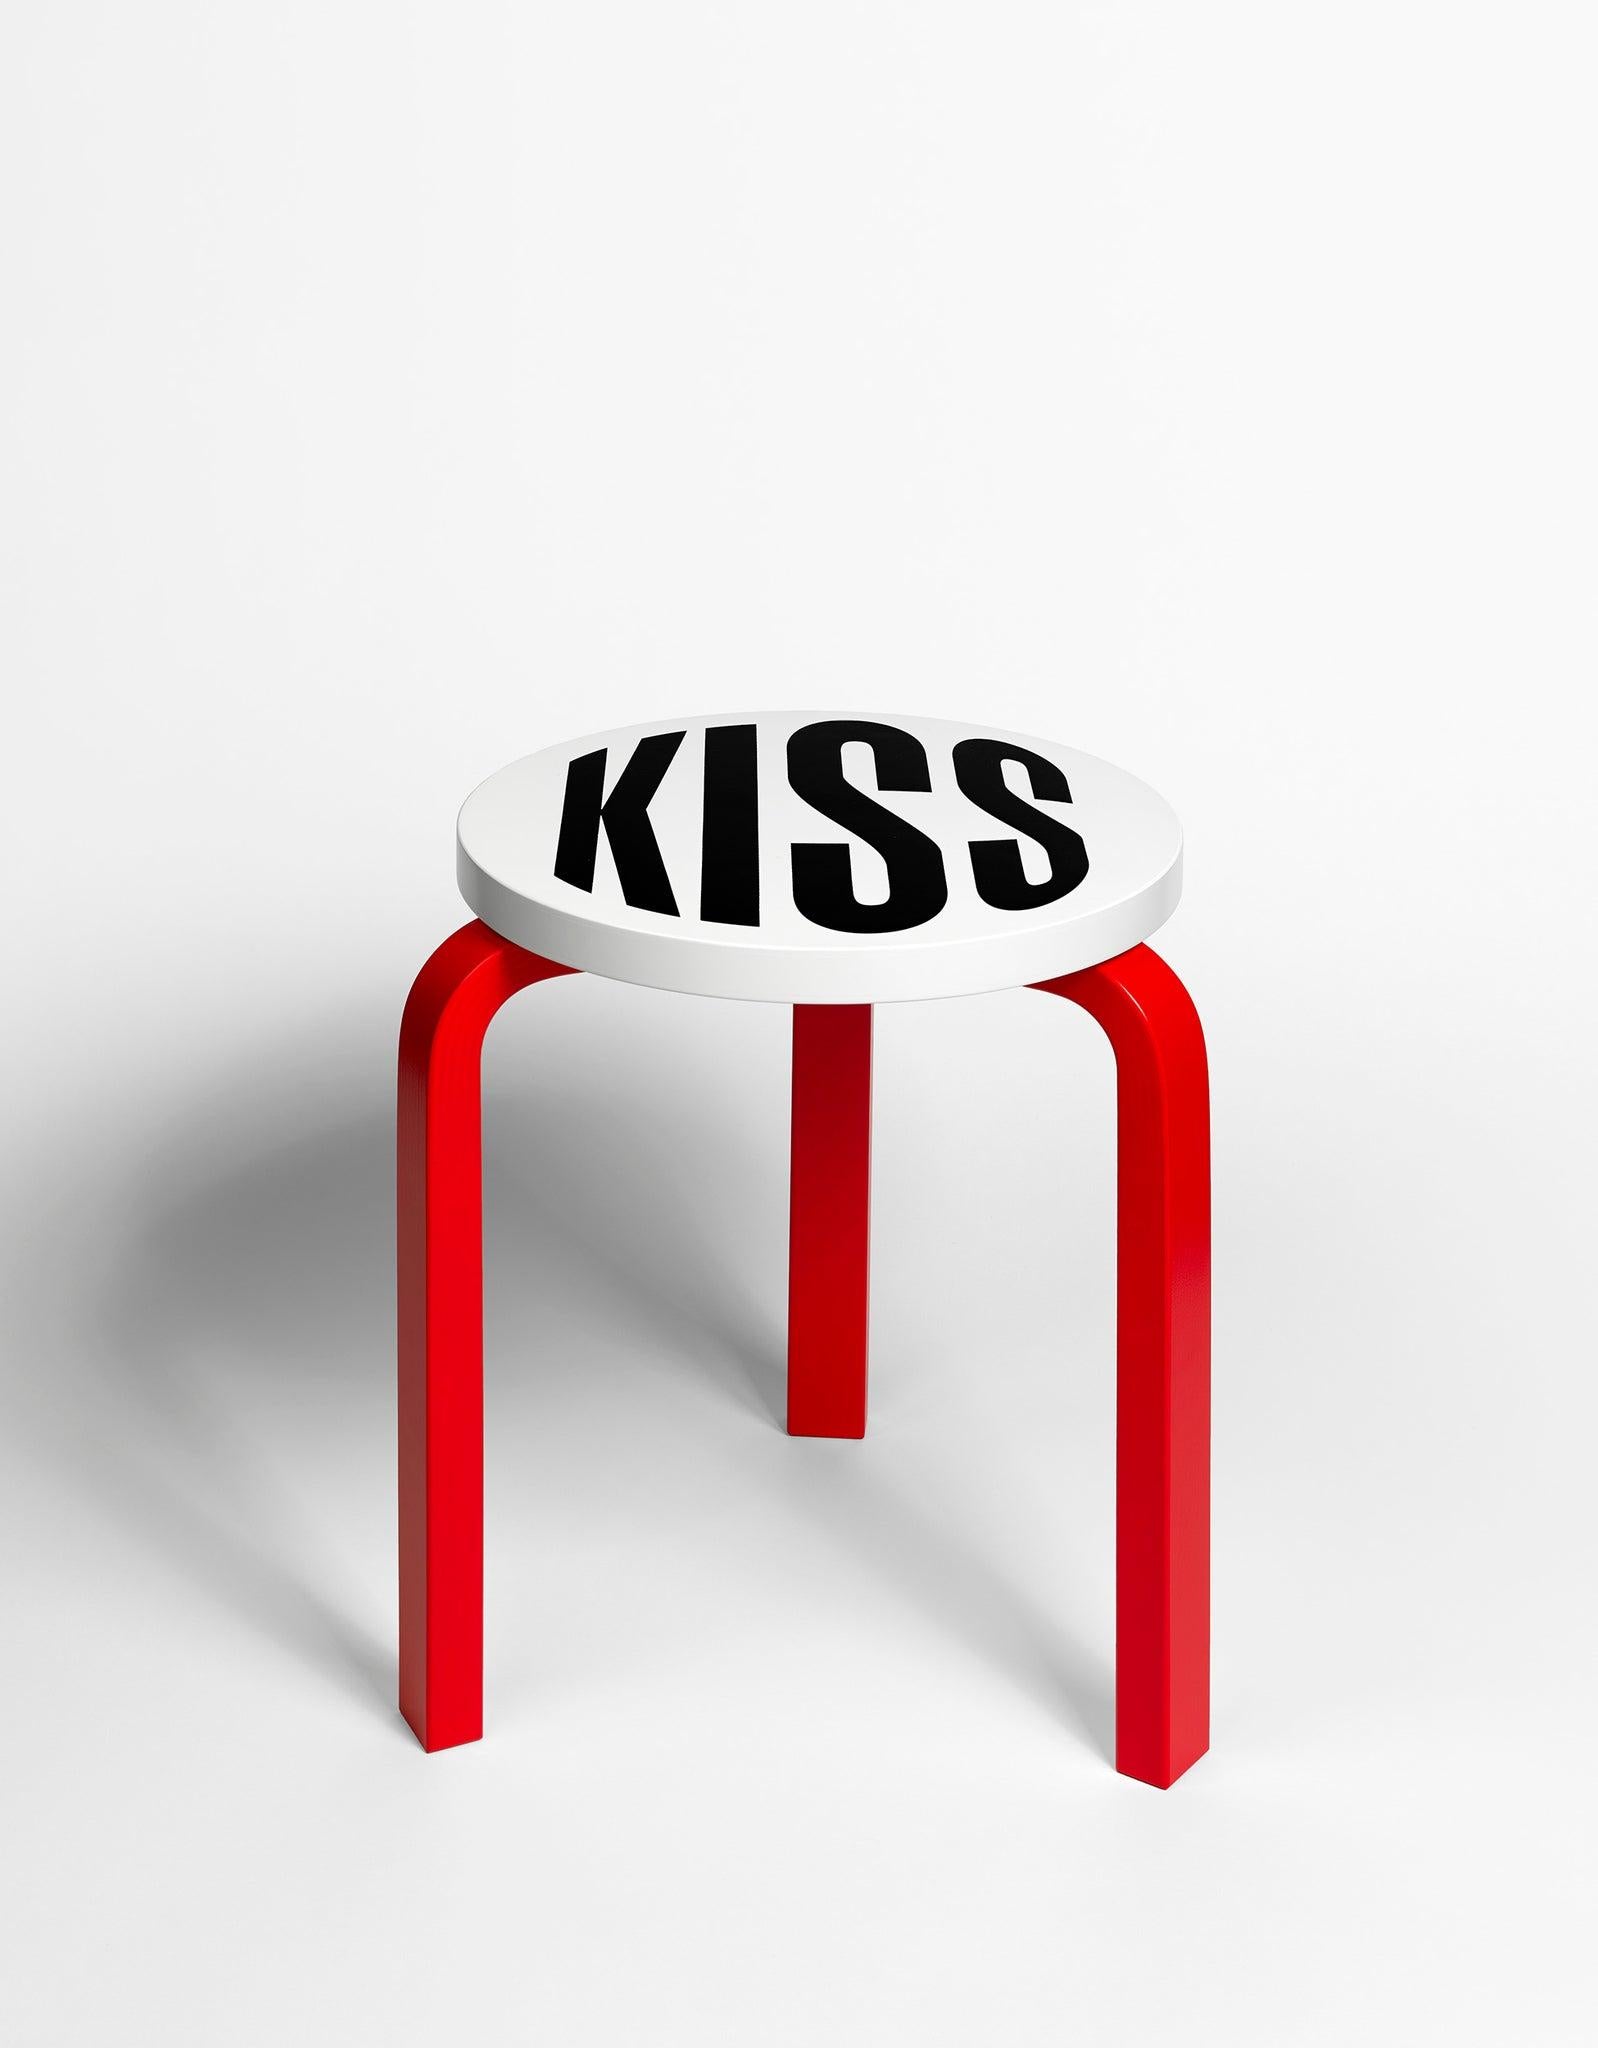 Untitled (Kiss)